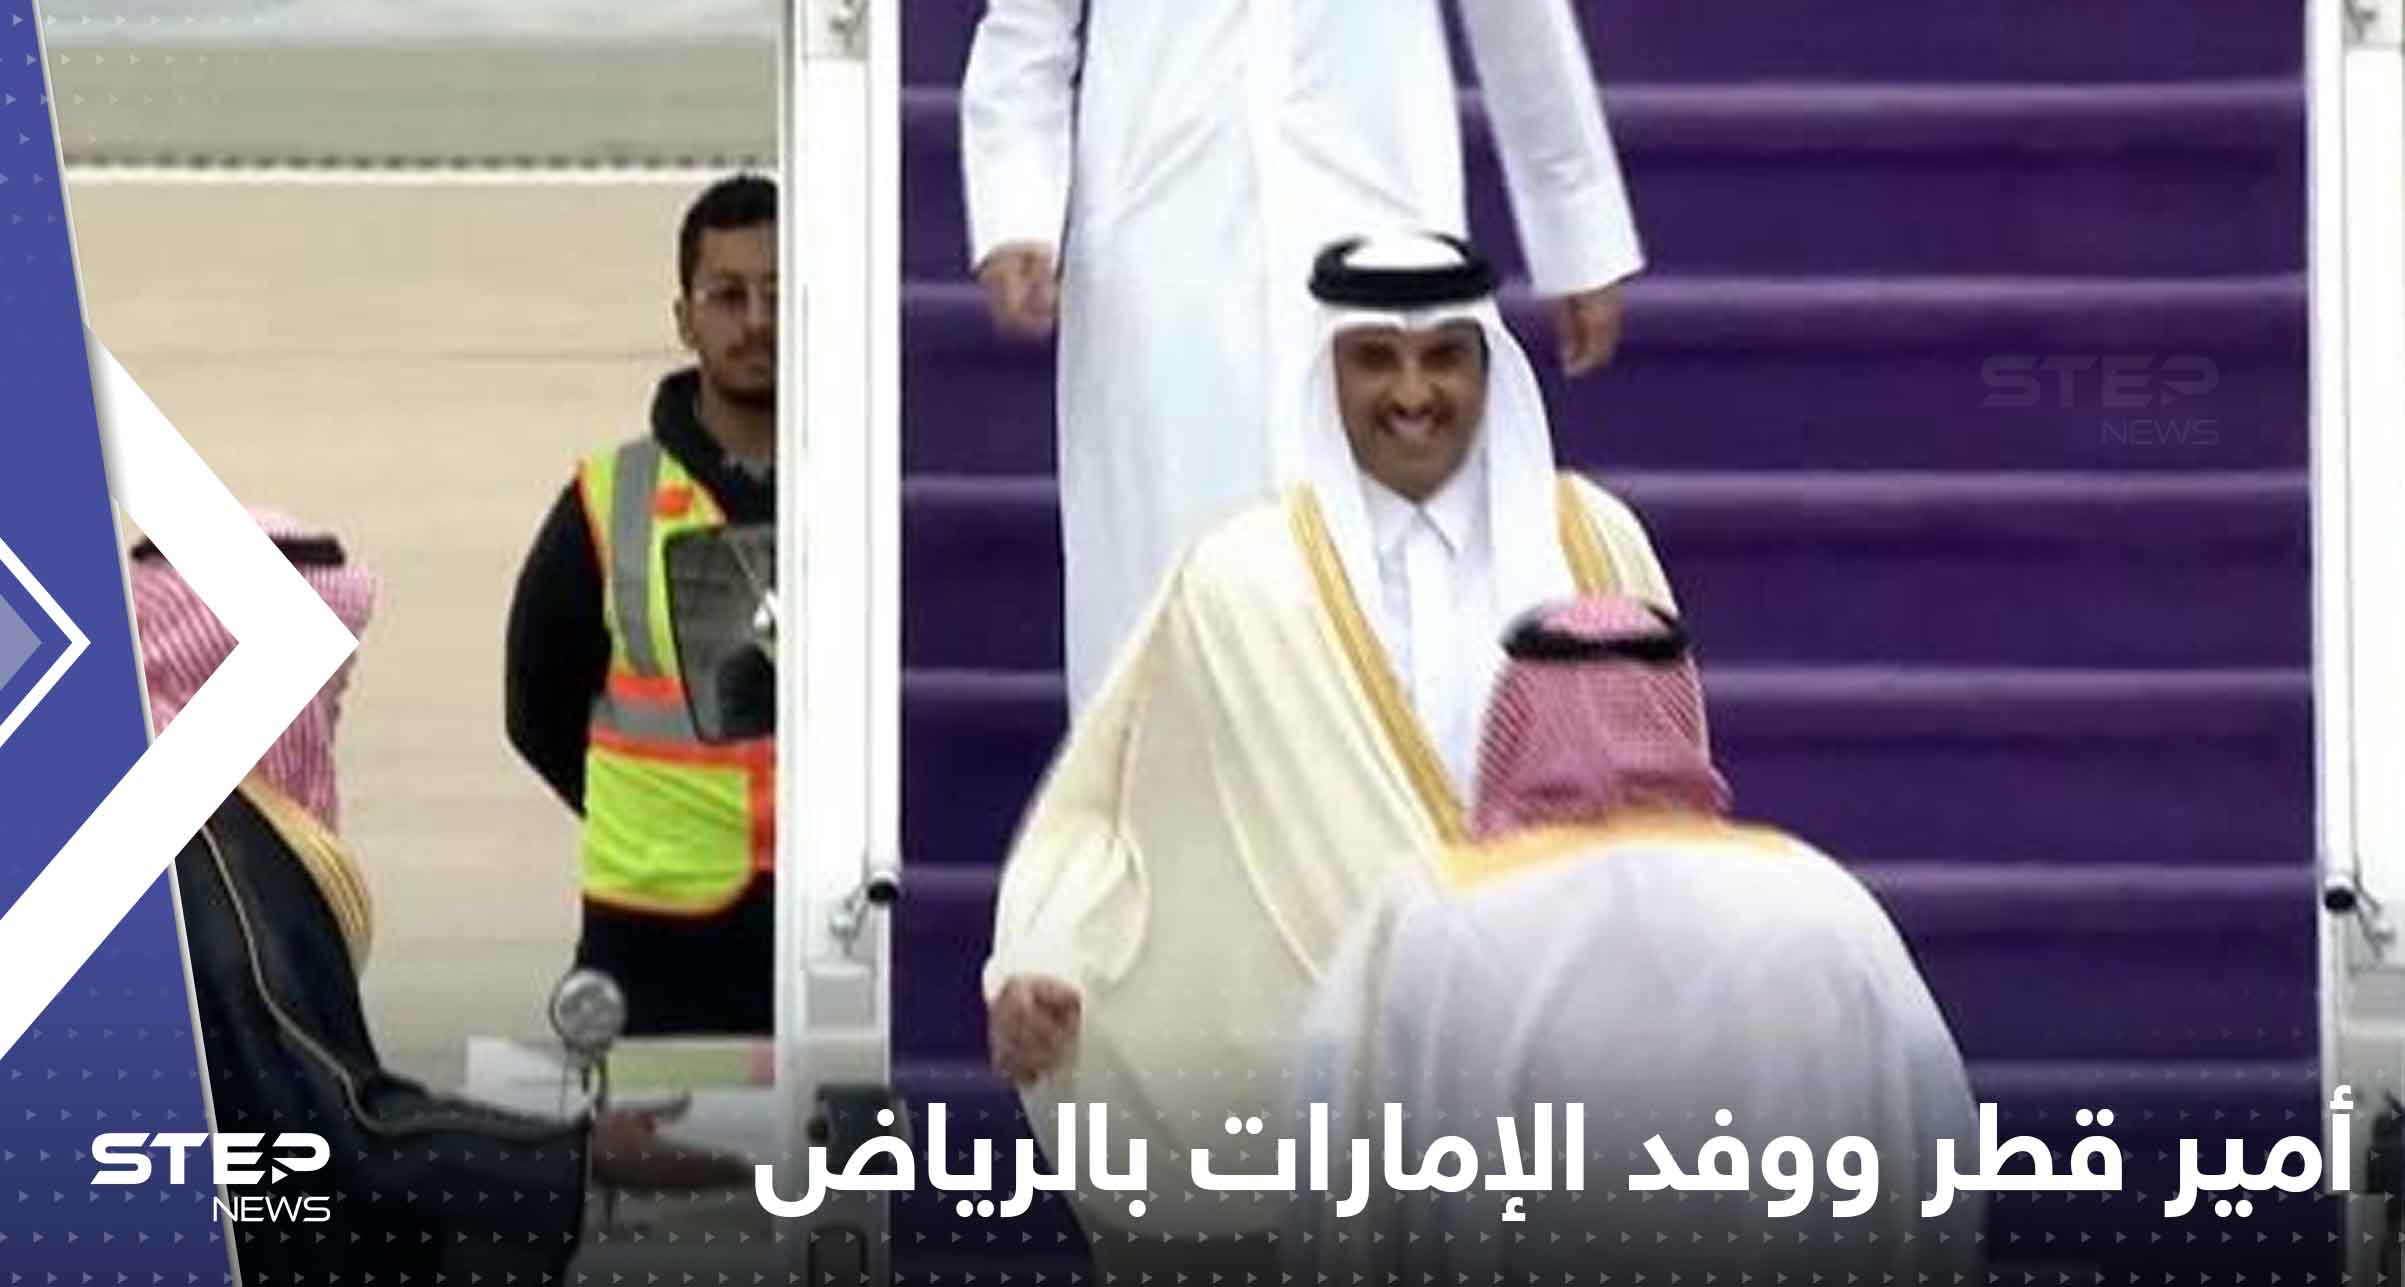 وصول أمير قطر ووفد الإمارات إلى الرياض